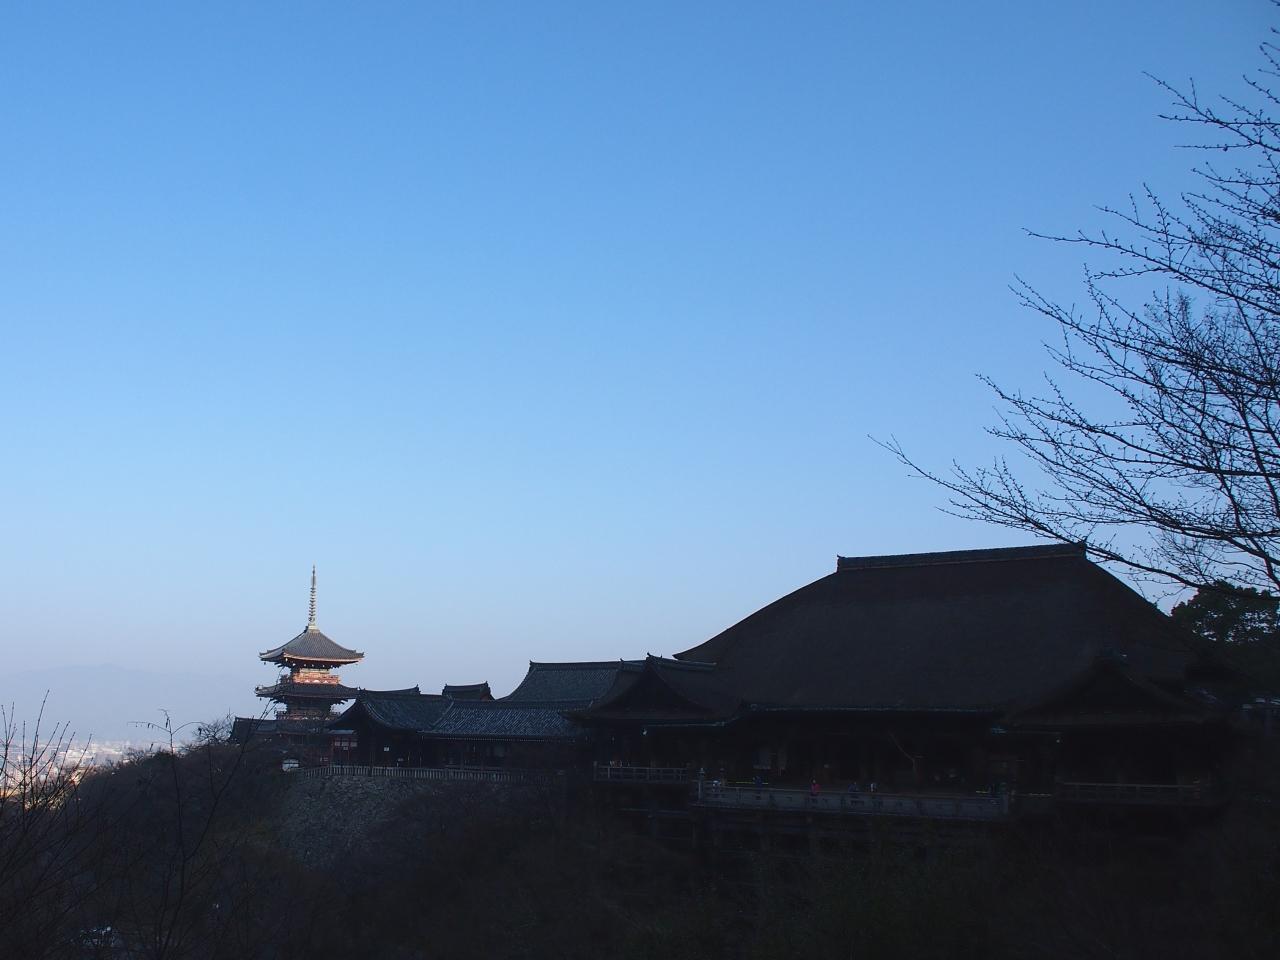 朝隈敏彦 朝焼けが美しい 清水寺三重塔